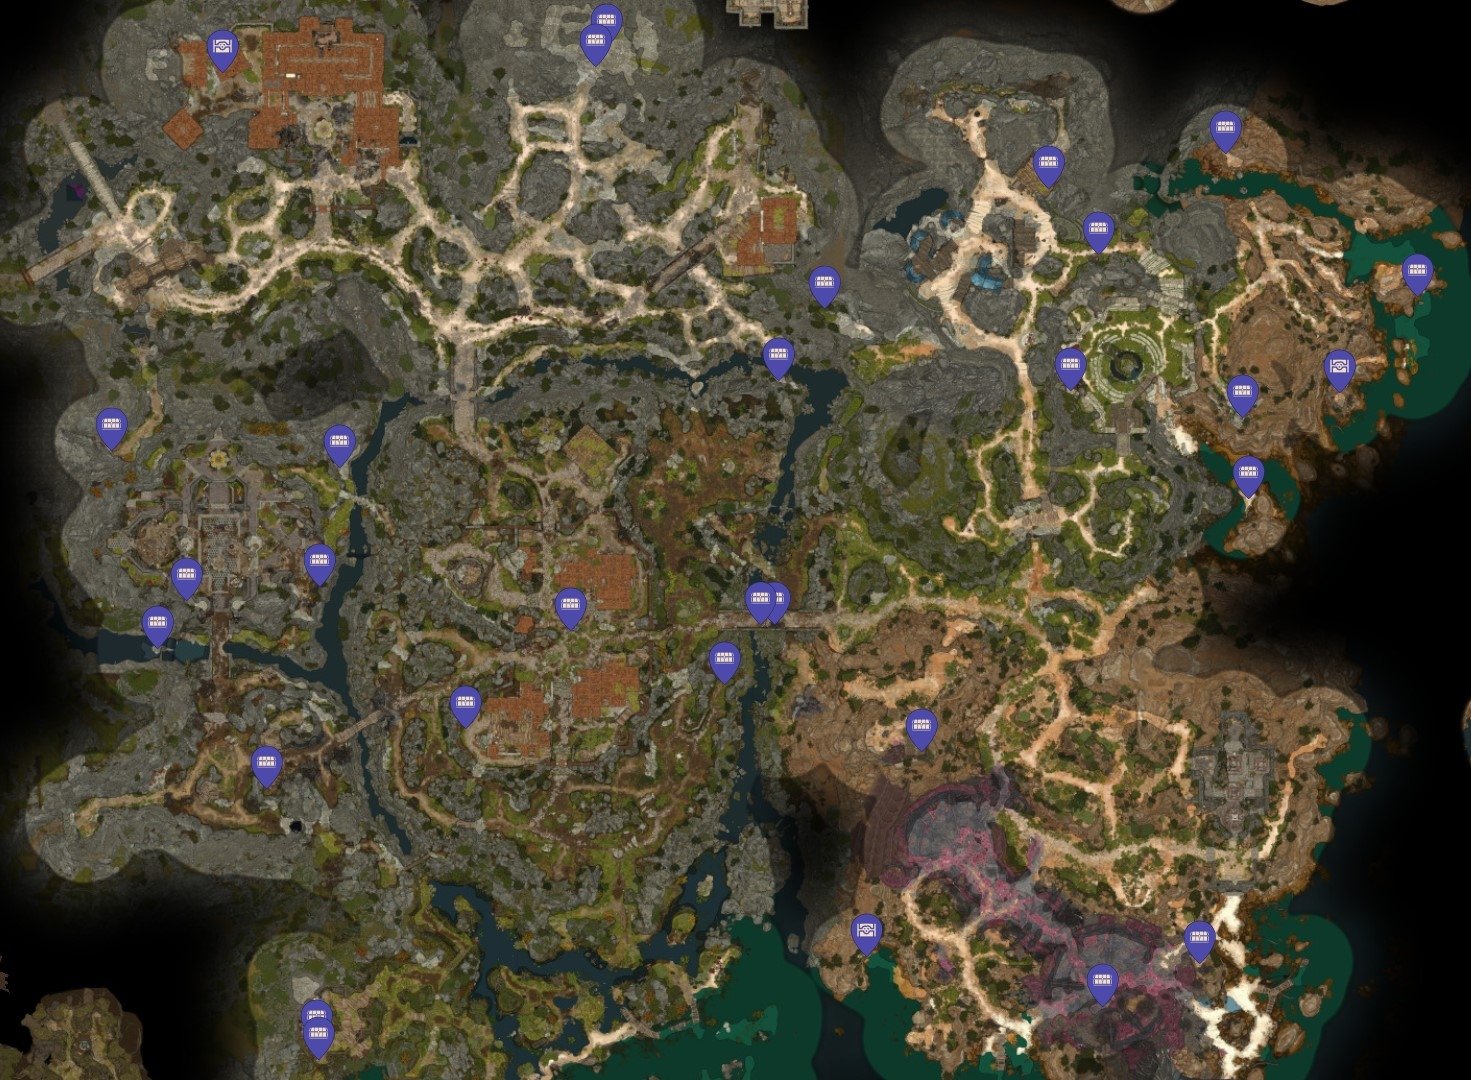 Mapa interactivo de Baldur's Gate 3 con la ubicación de todos los recursos  y secretos del juego - Baldur's Gate 3 - 3DJuegos